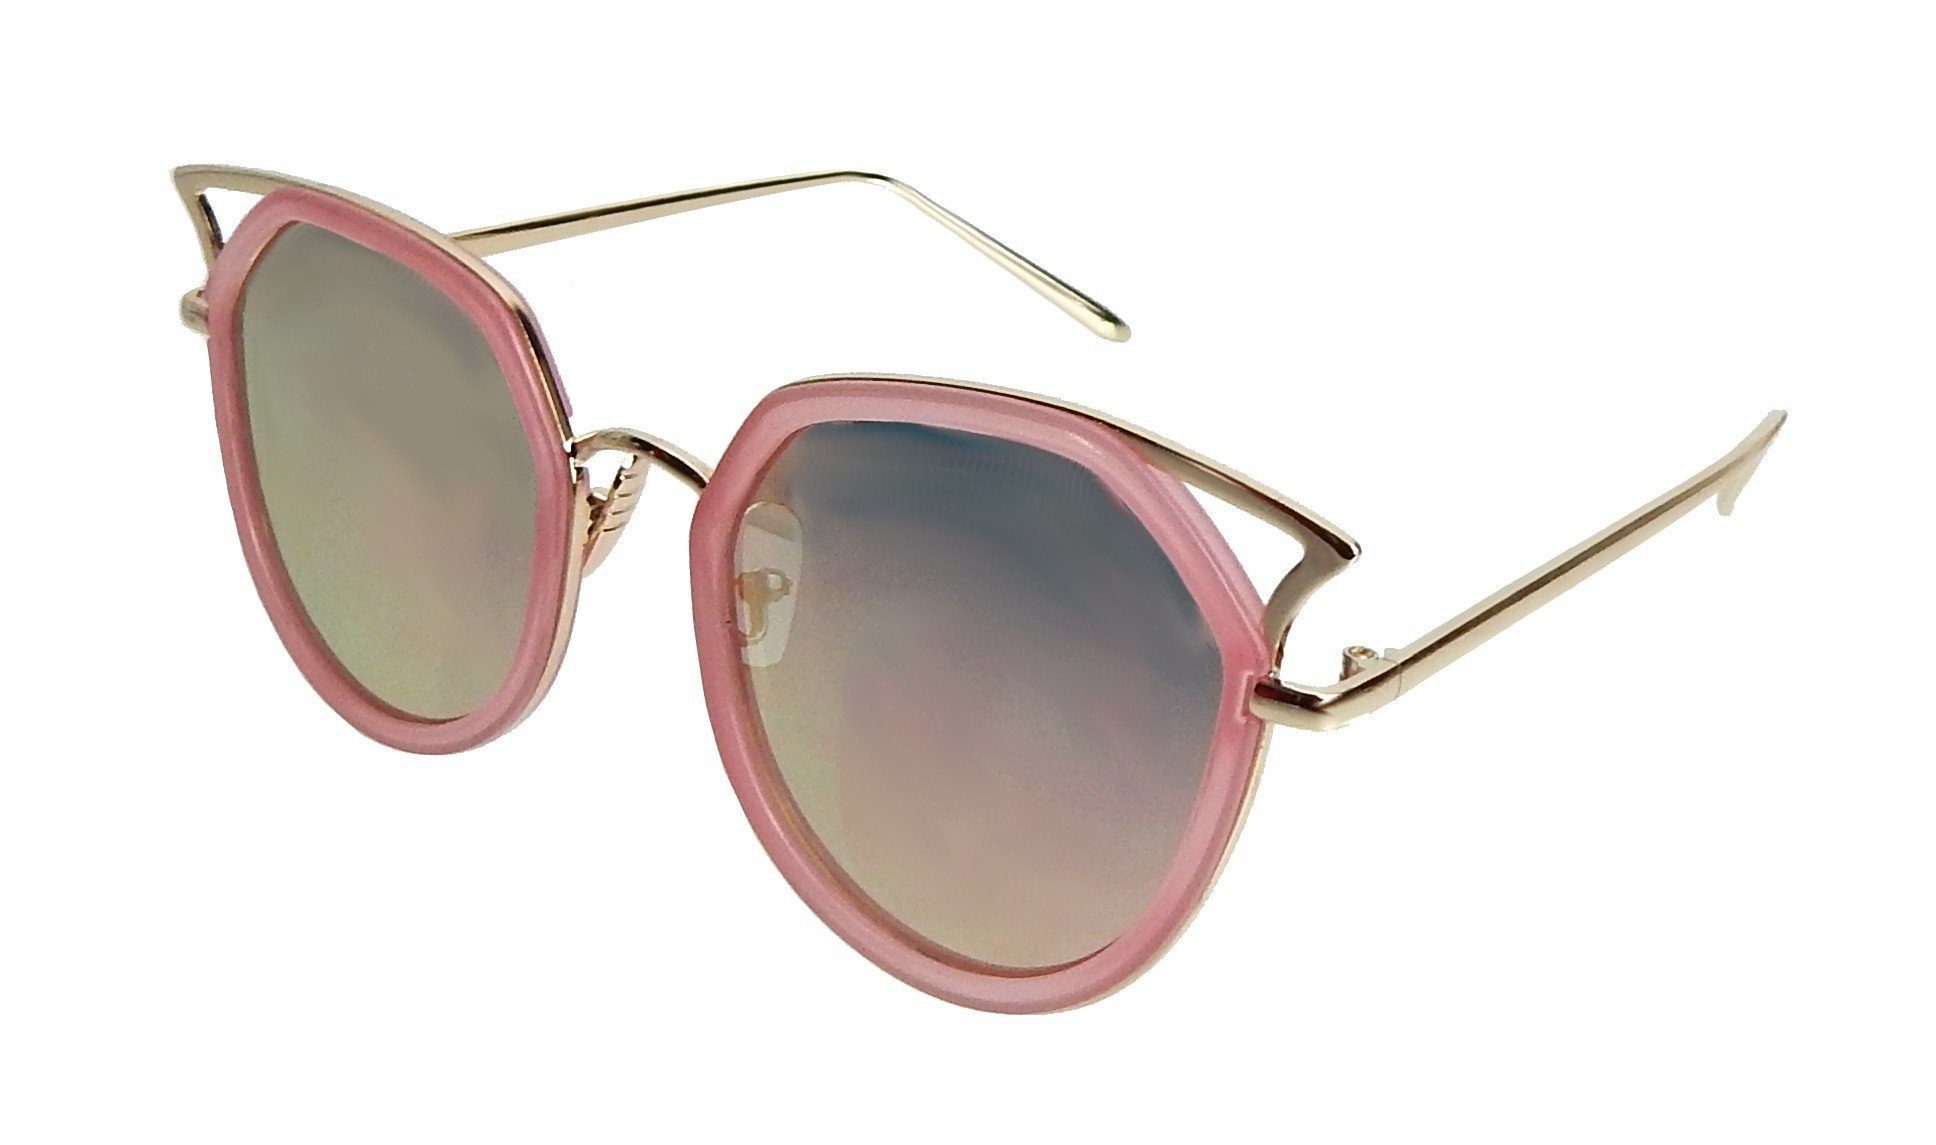 Ella Jonte Sonnenbrille rosa oder schwarz mit goldenen Bügeln transparent verspiegelt